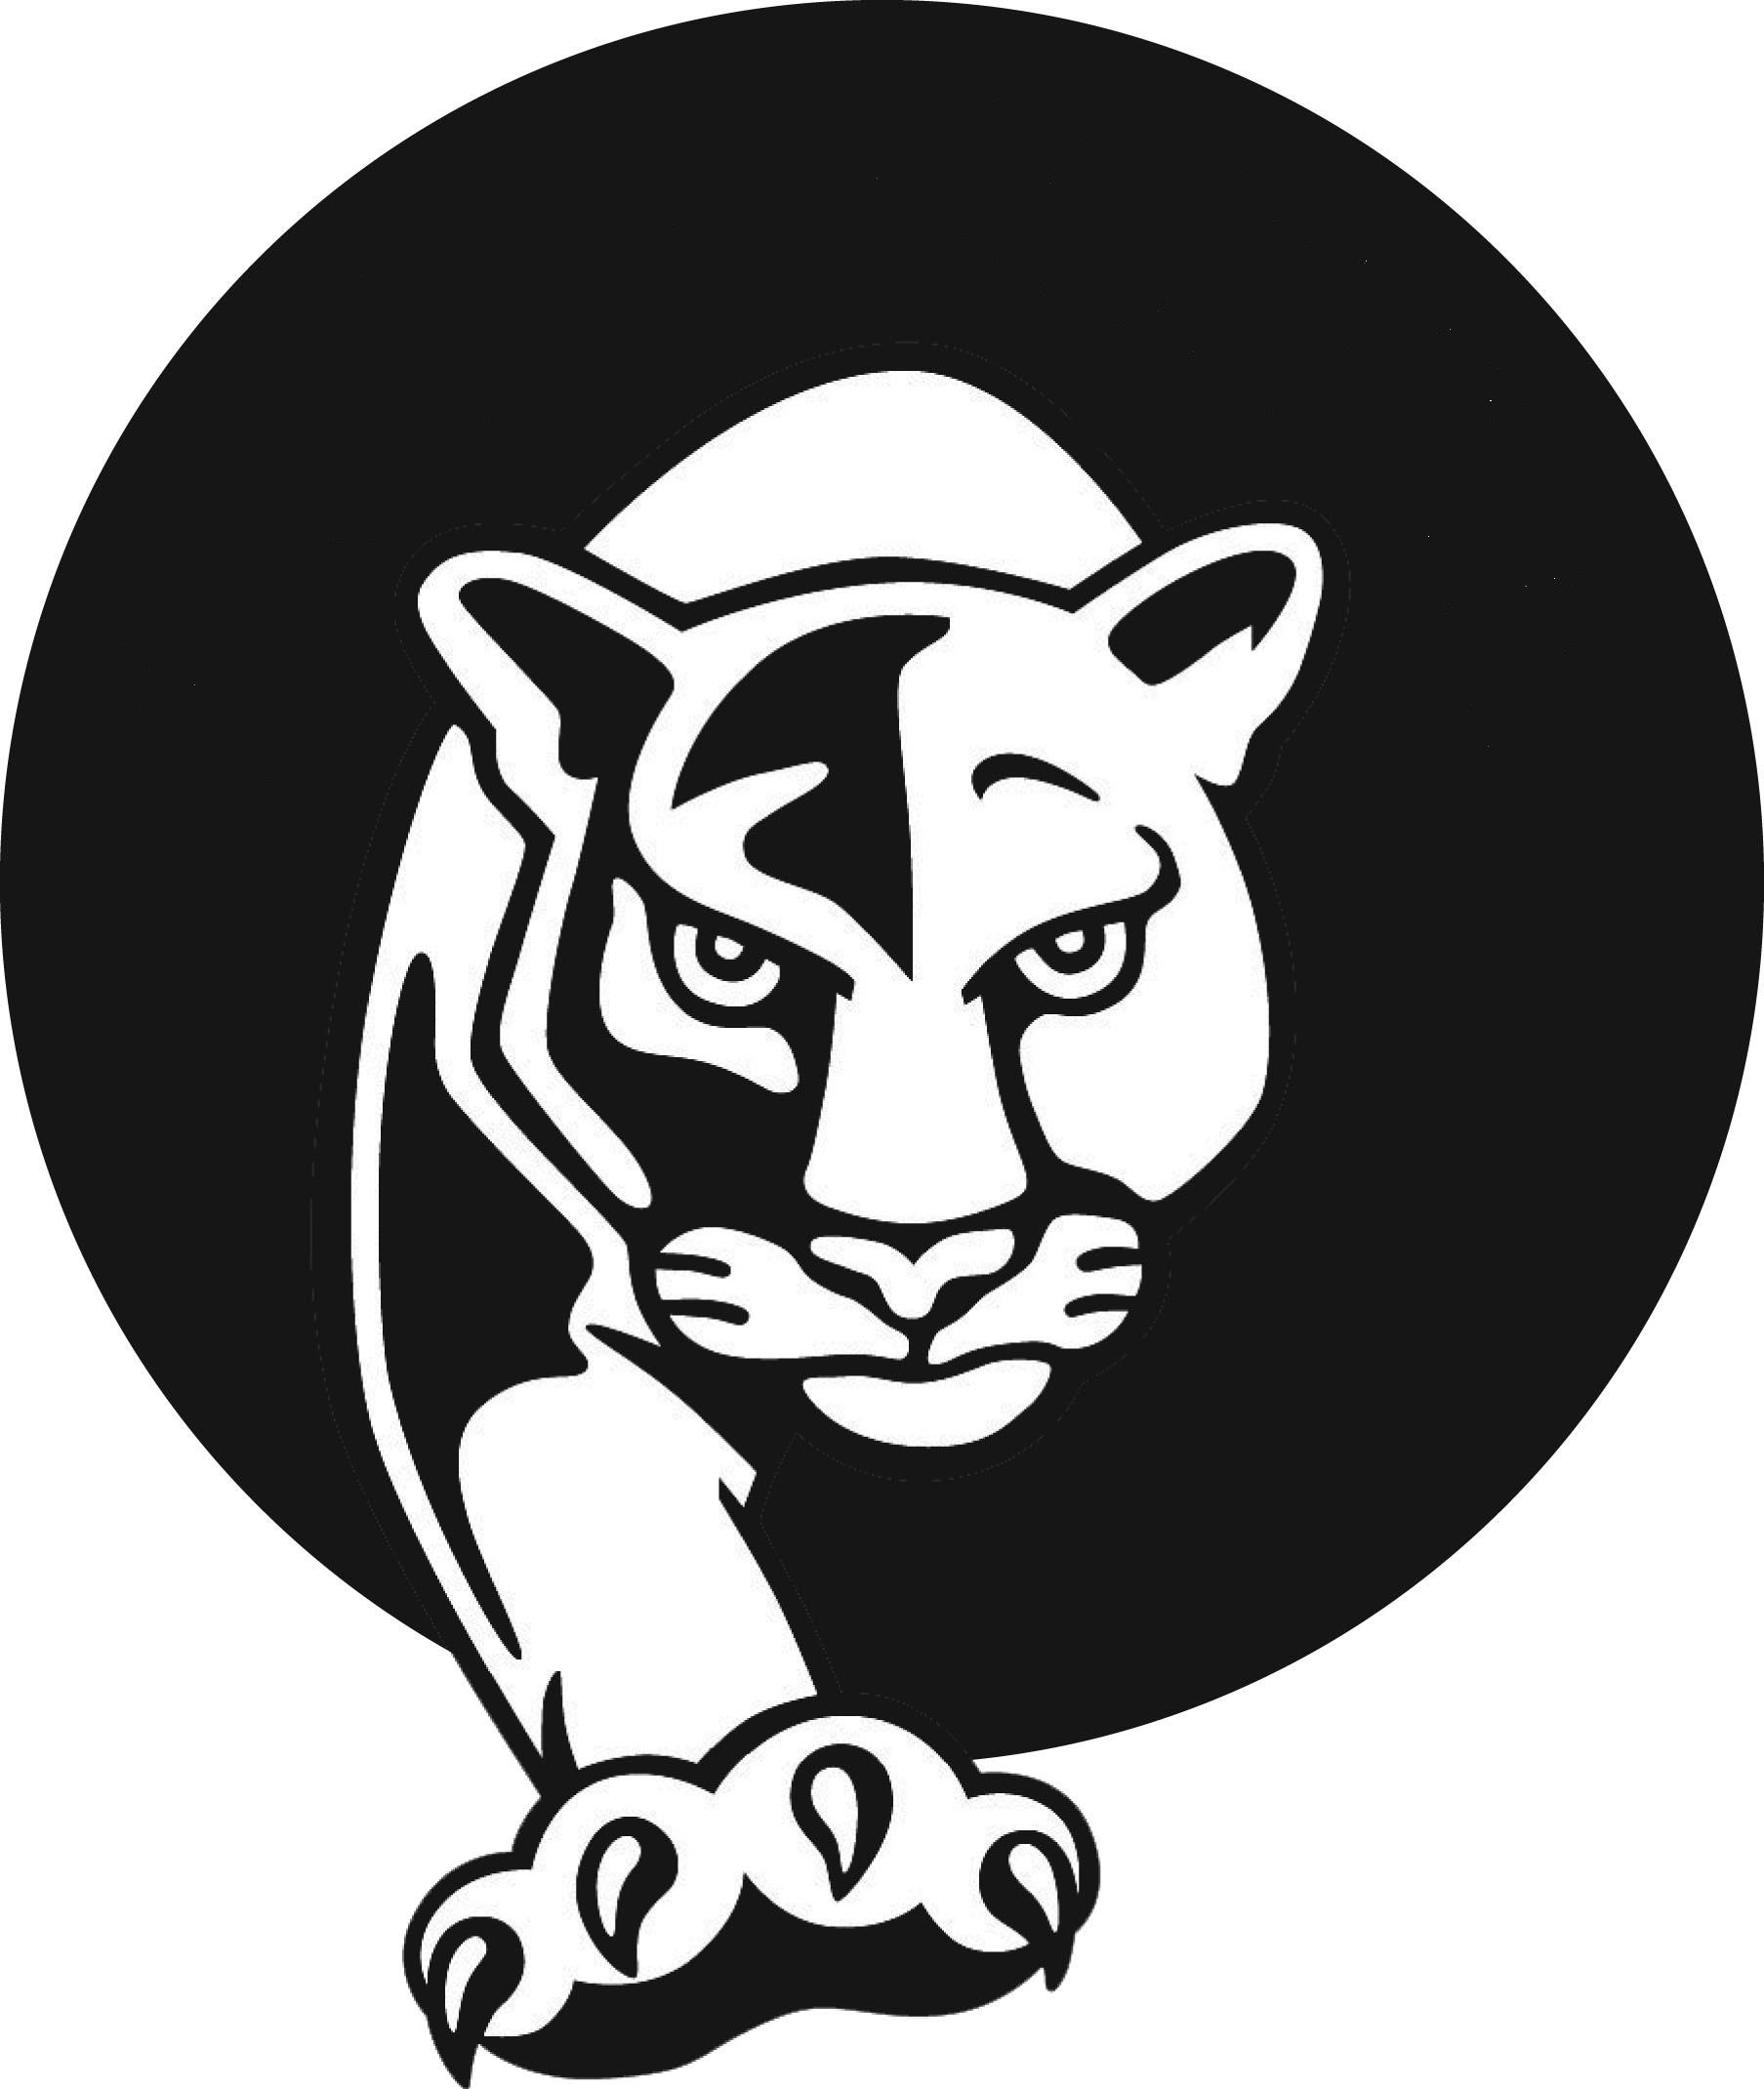 Black and White Panther Logo - Black panther Logos